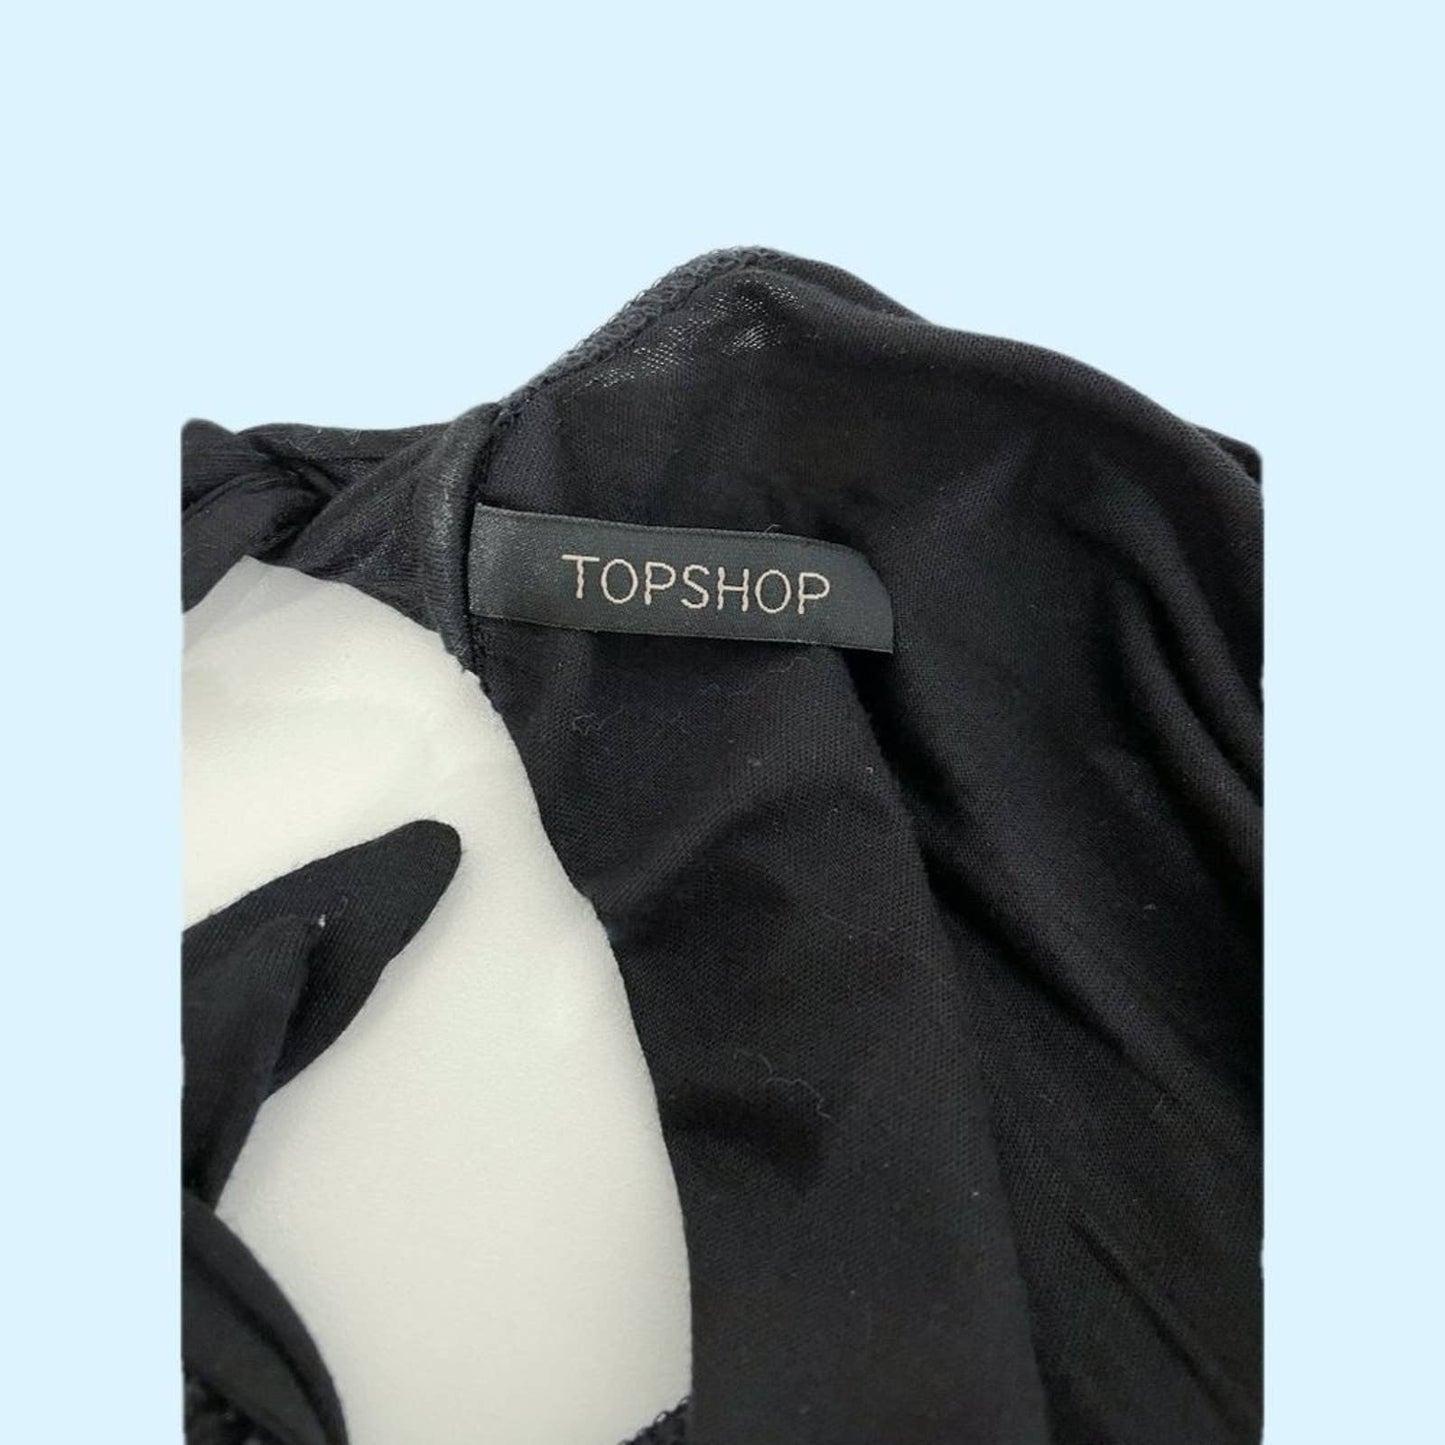 TOPSHOP Vintage Black Embellished Sleeveless Top